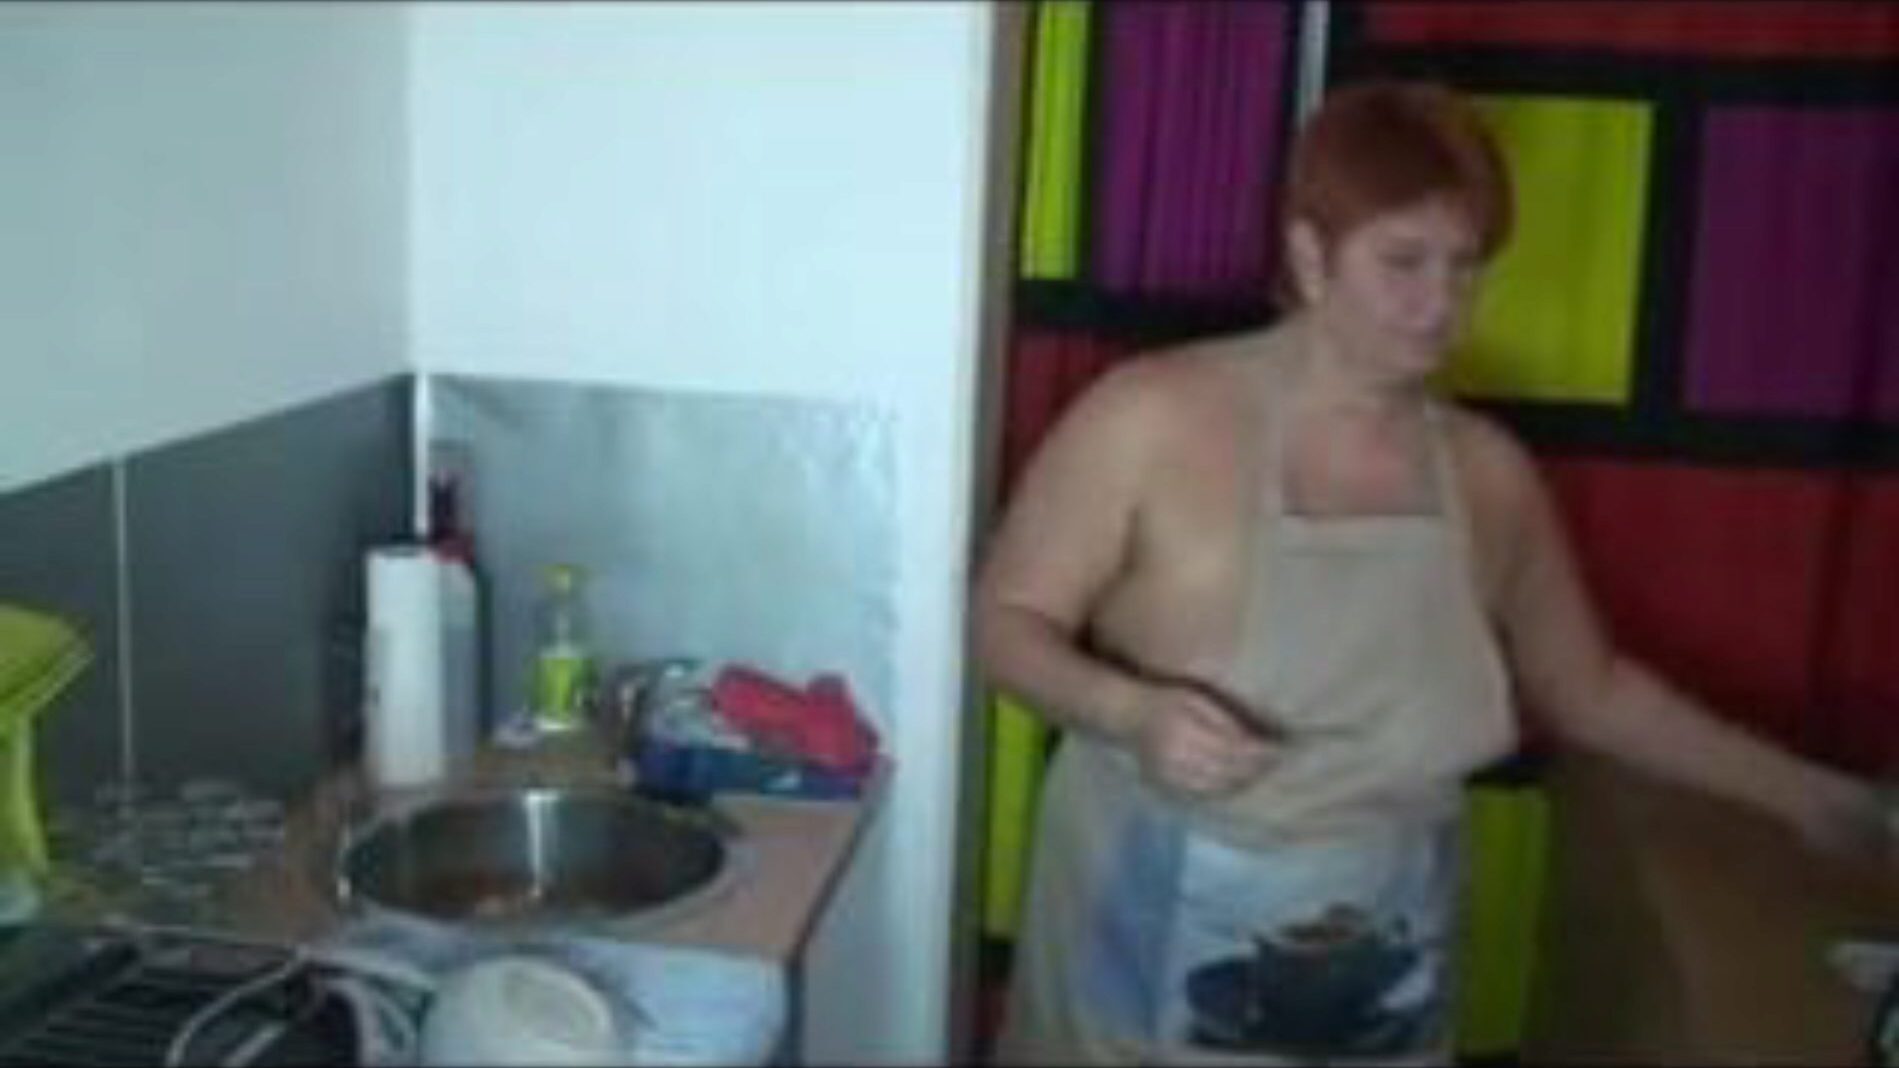 när man diskar i köket, gratis porr 55: xhamster titta när man diskar i köket klipp på xhamster, den gigantiska sexrörssidan med massor av gratis tyska hetaste och ljudande porrvids